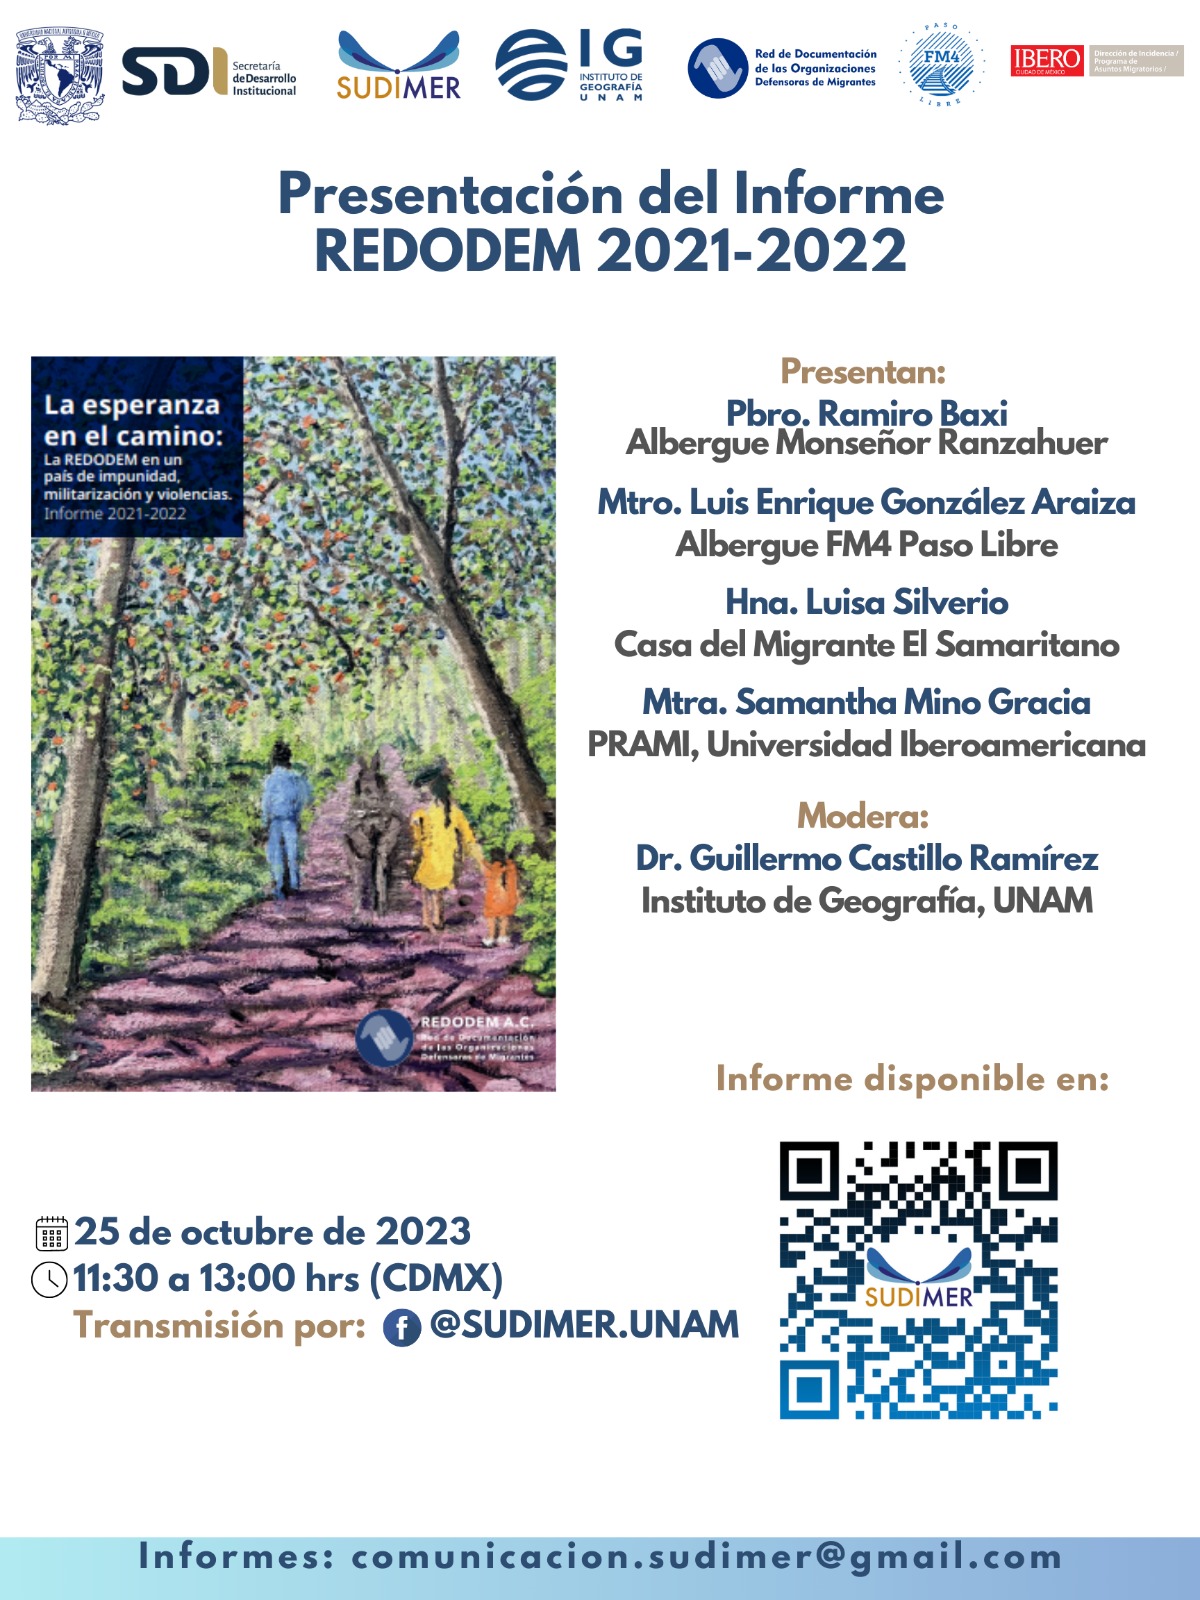 Presentación del Informe REDODEM 2021-2022 